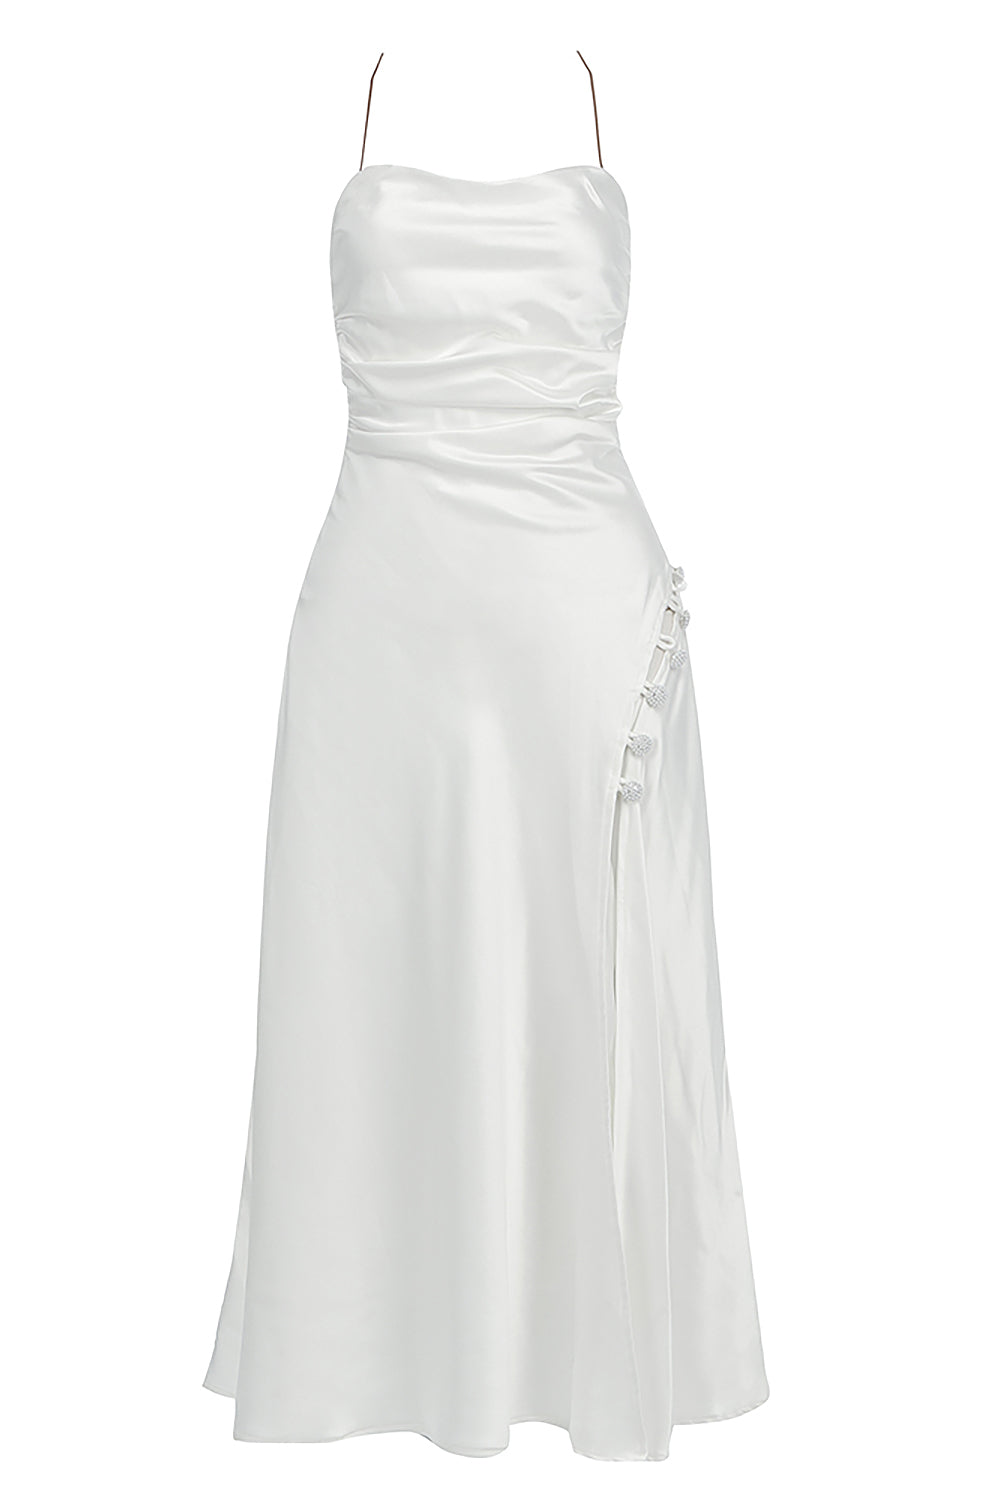 Vestido branco com alças e alças divididas